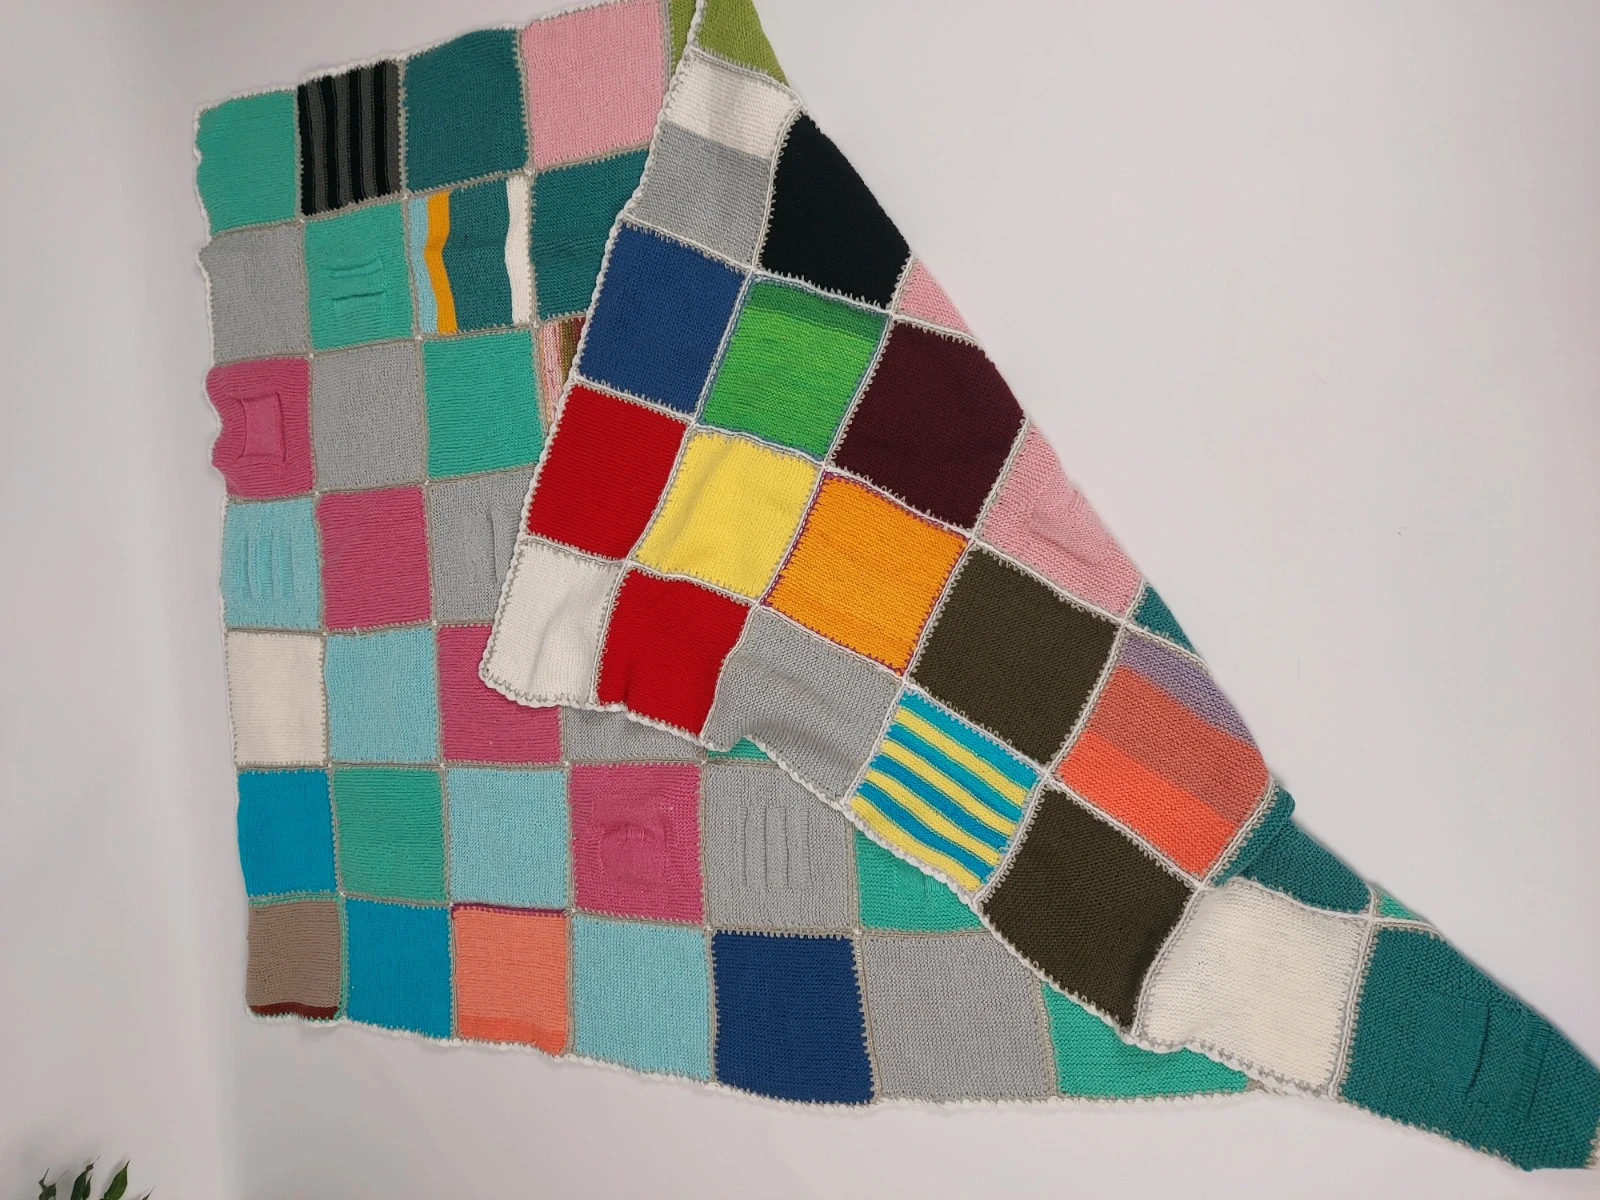 Nowy duzy koc narzuta kolorowa wielobarwna patchwork handmade 160 cm x 200 cm